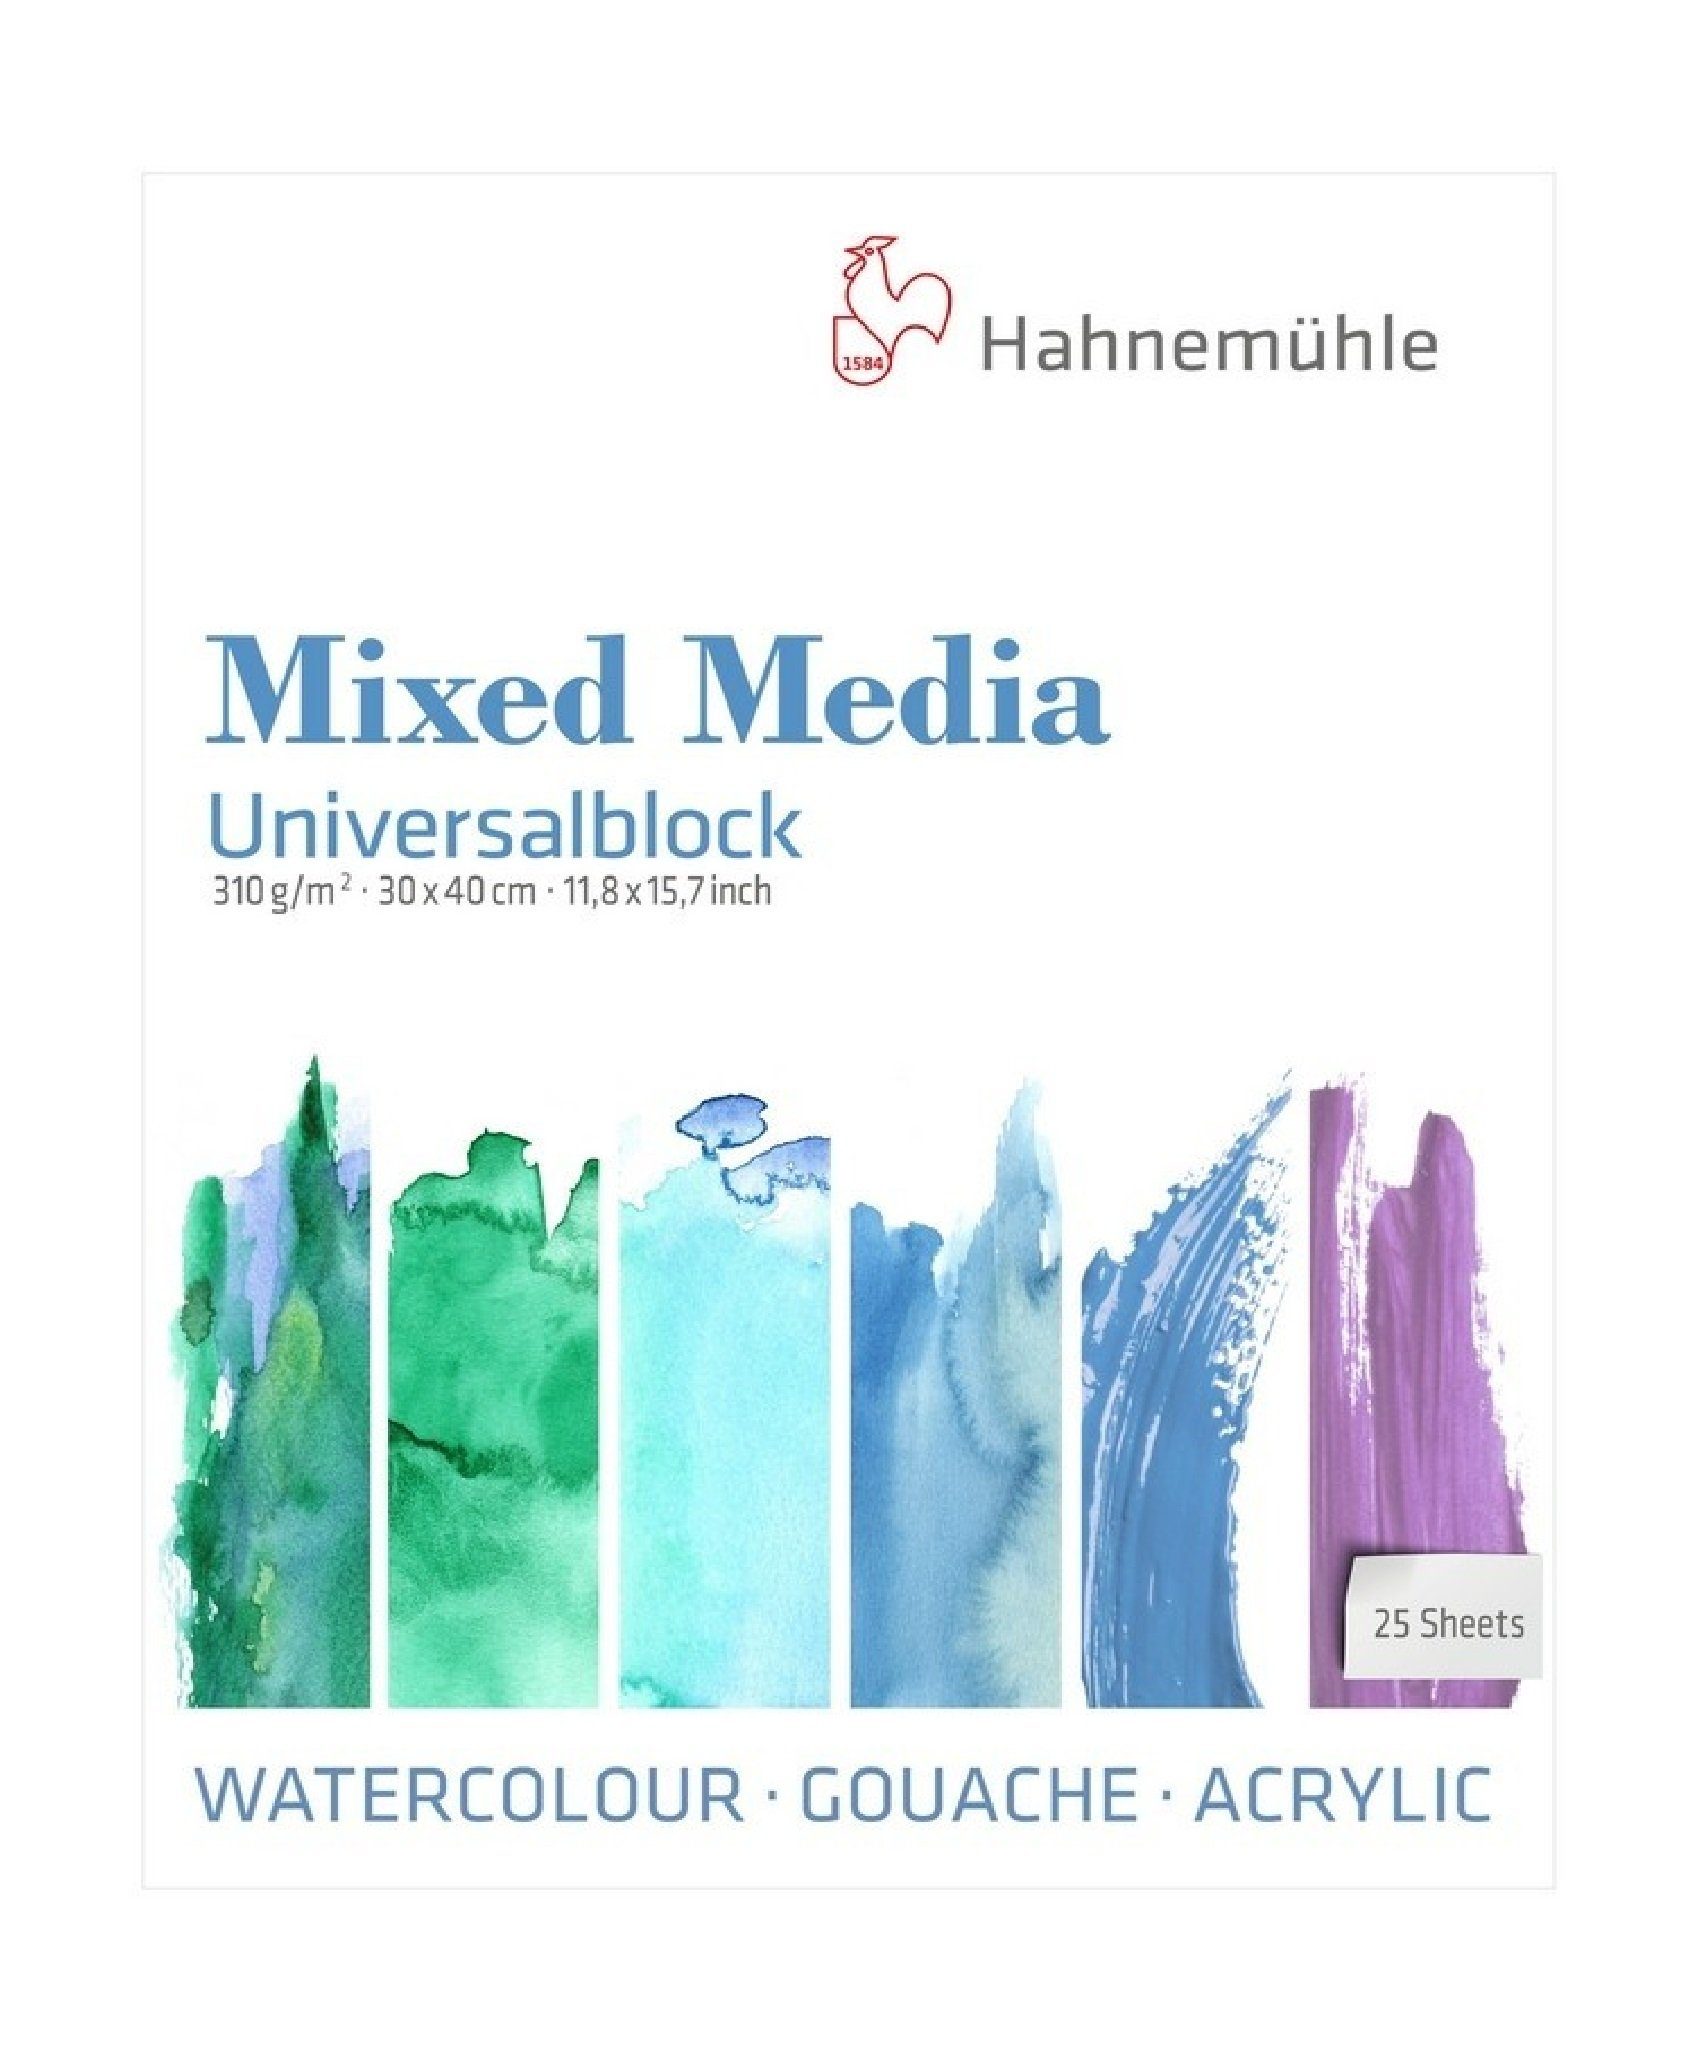 Hahnemühle Malblock Mixed Media Universalblock 30x40cm 310g/m², säurefrei